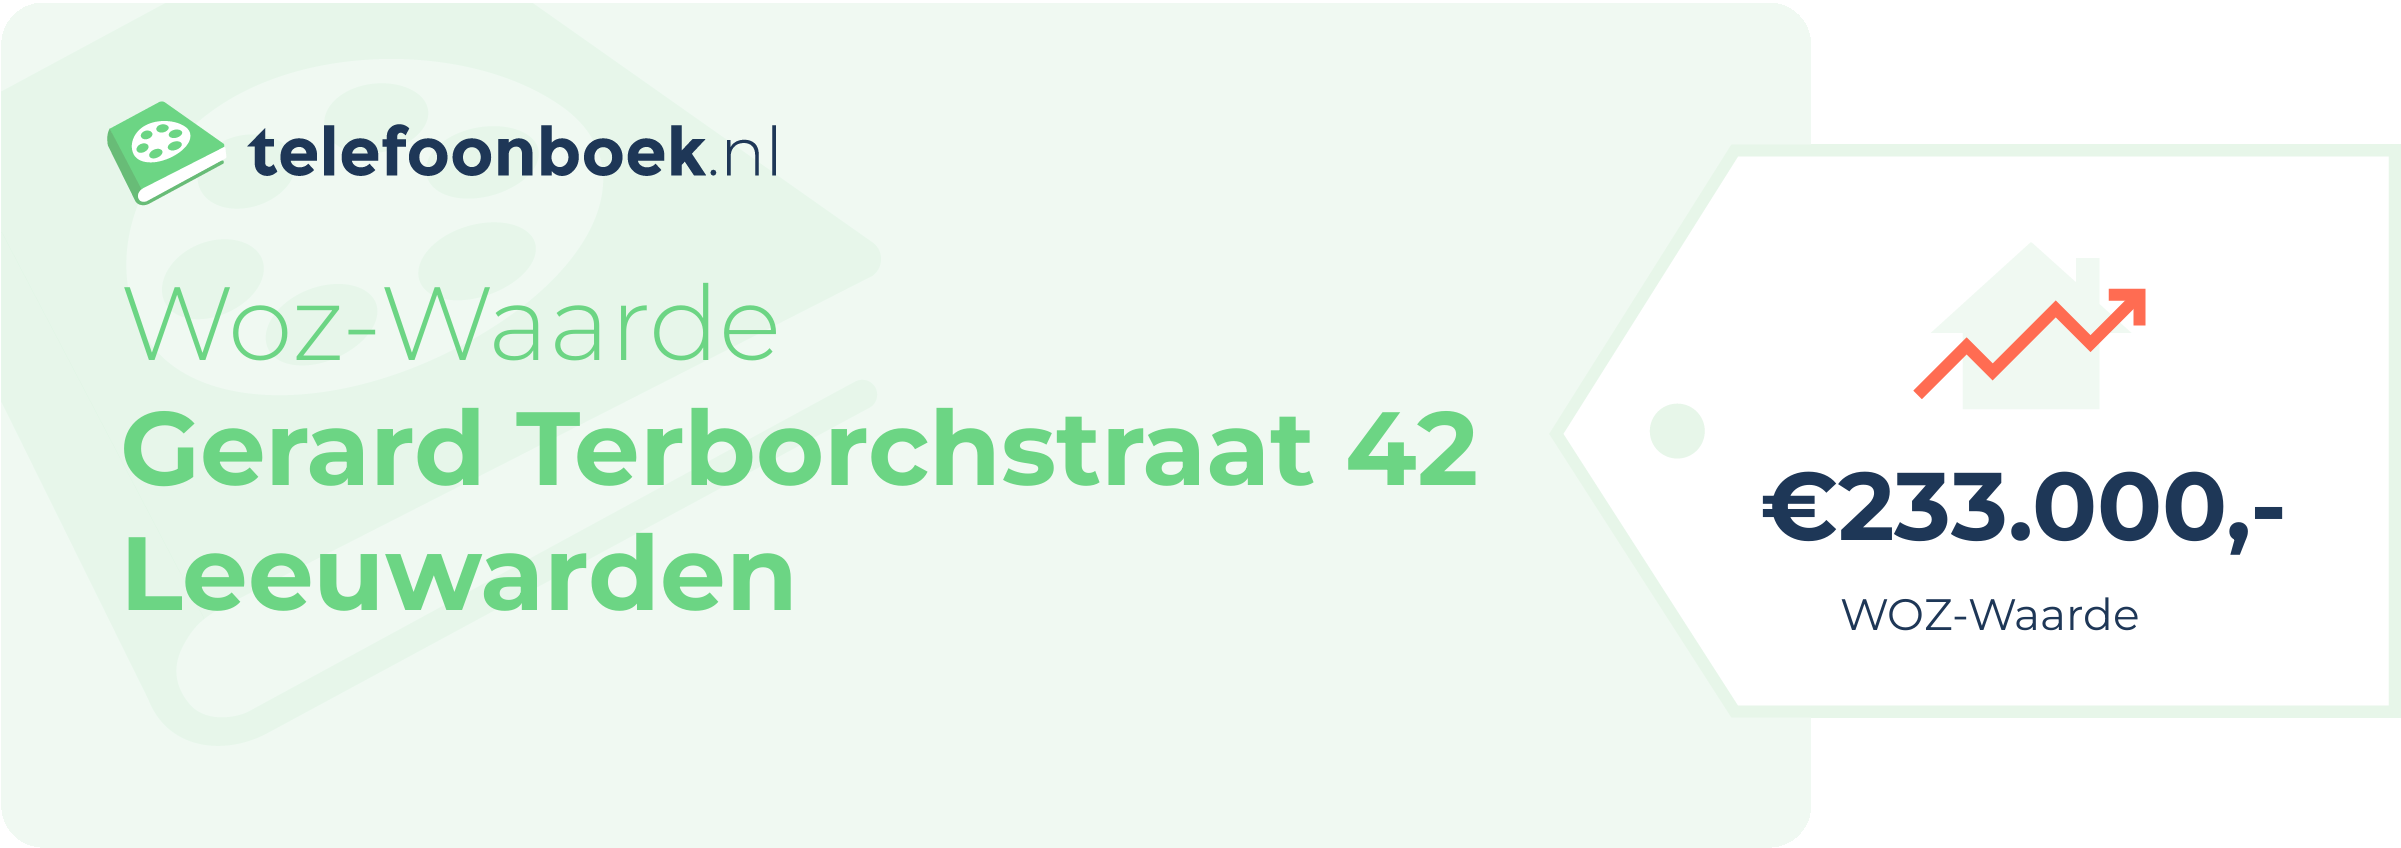 WOZ-waarde Gerard Terborchstraat 42 Leeuwarden